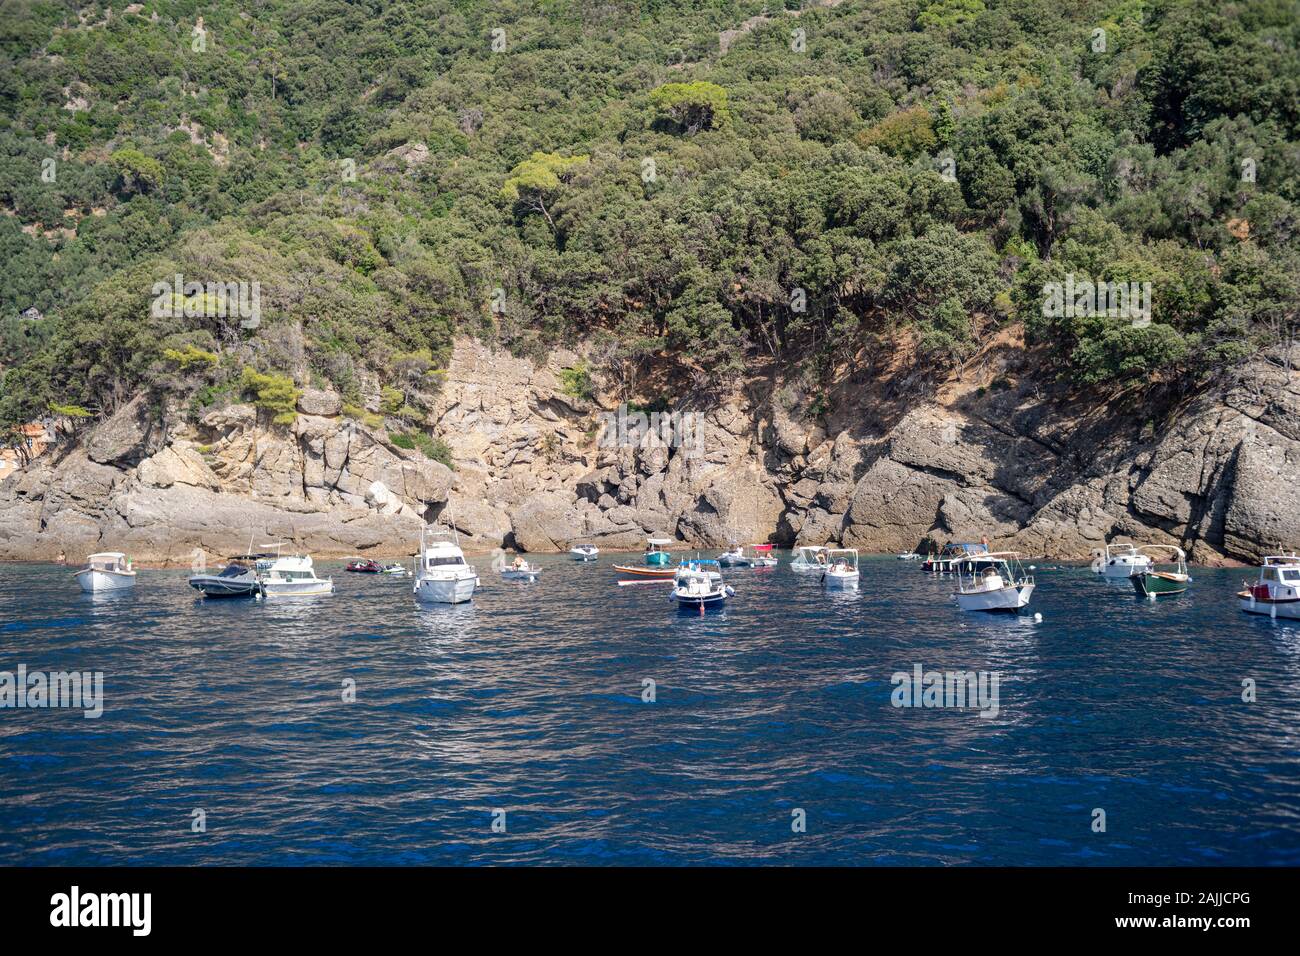 Coastal rocky beach at Portofino natural regional park, Liguria, Italy Stock Photo